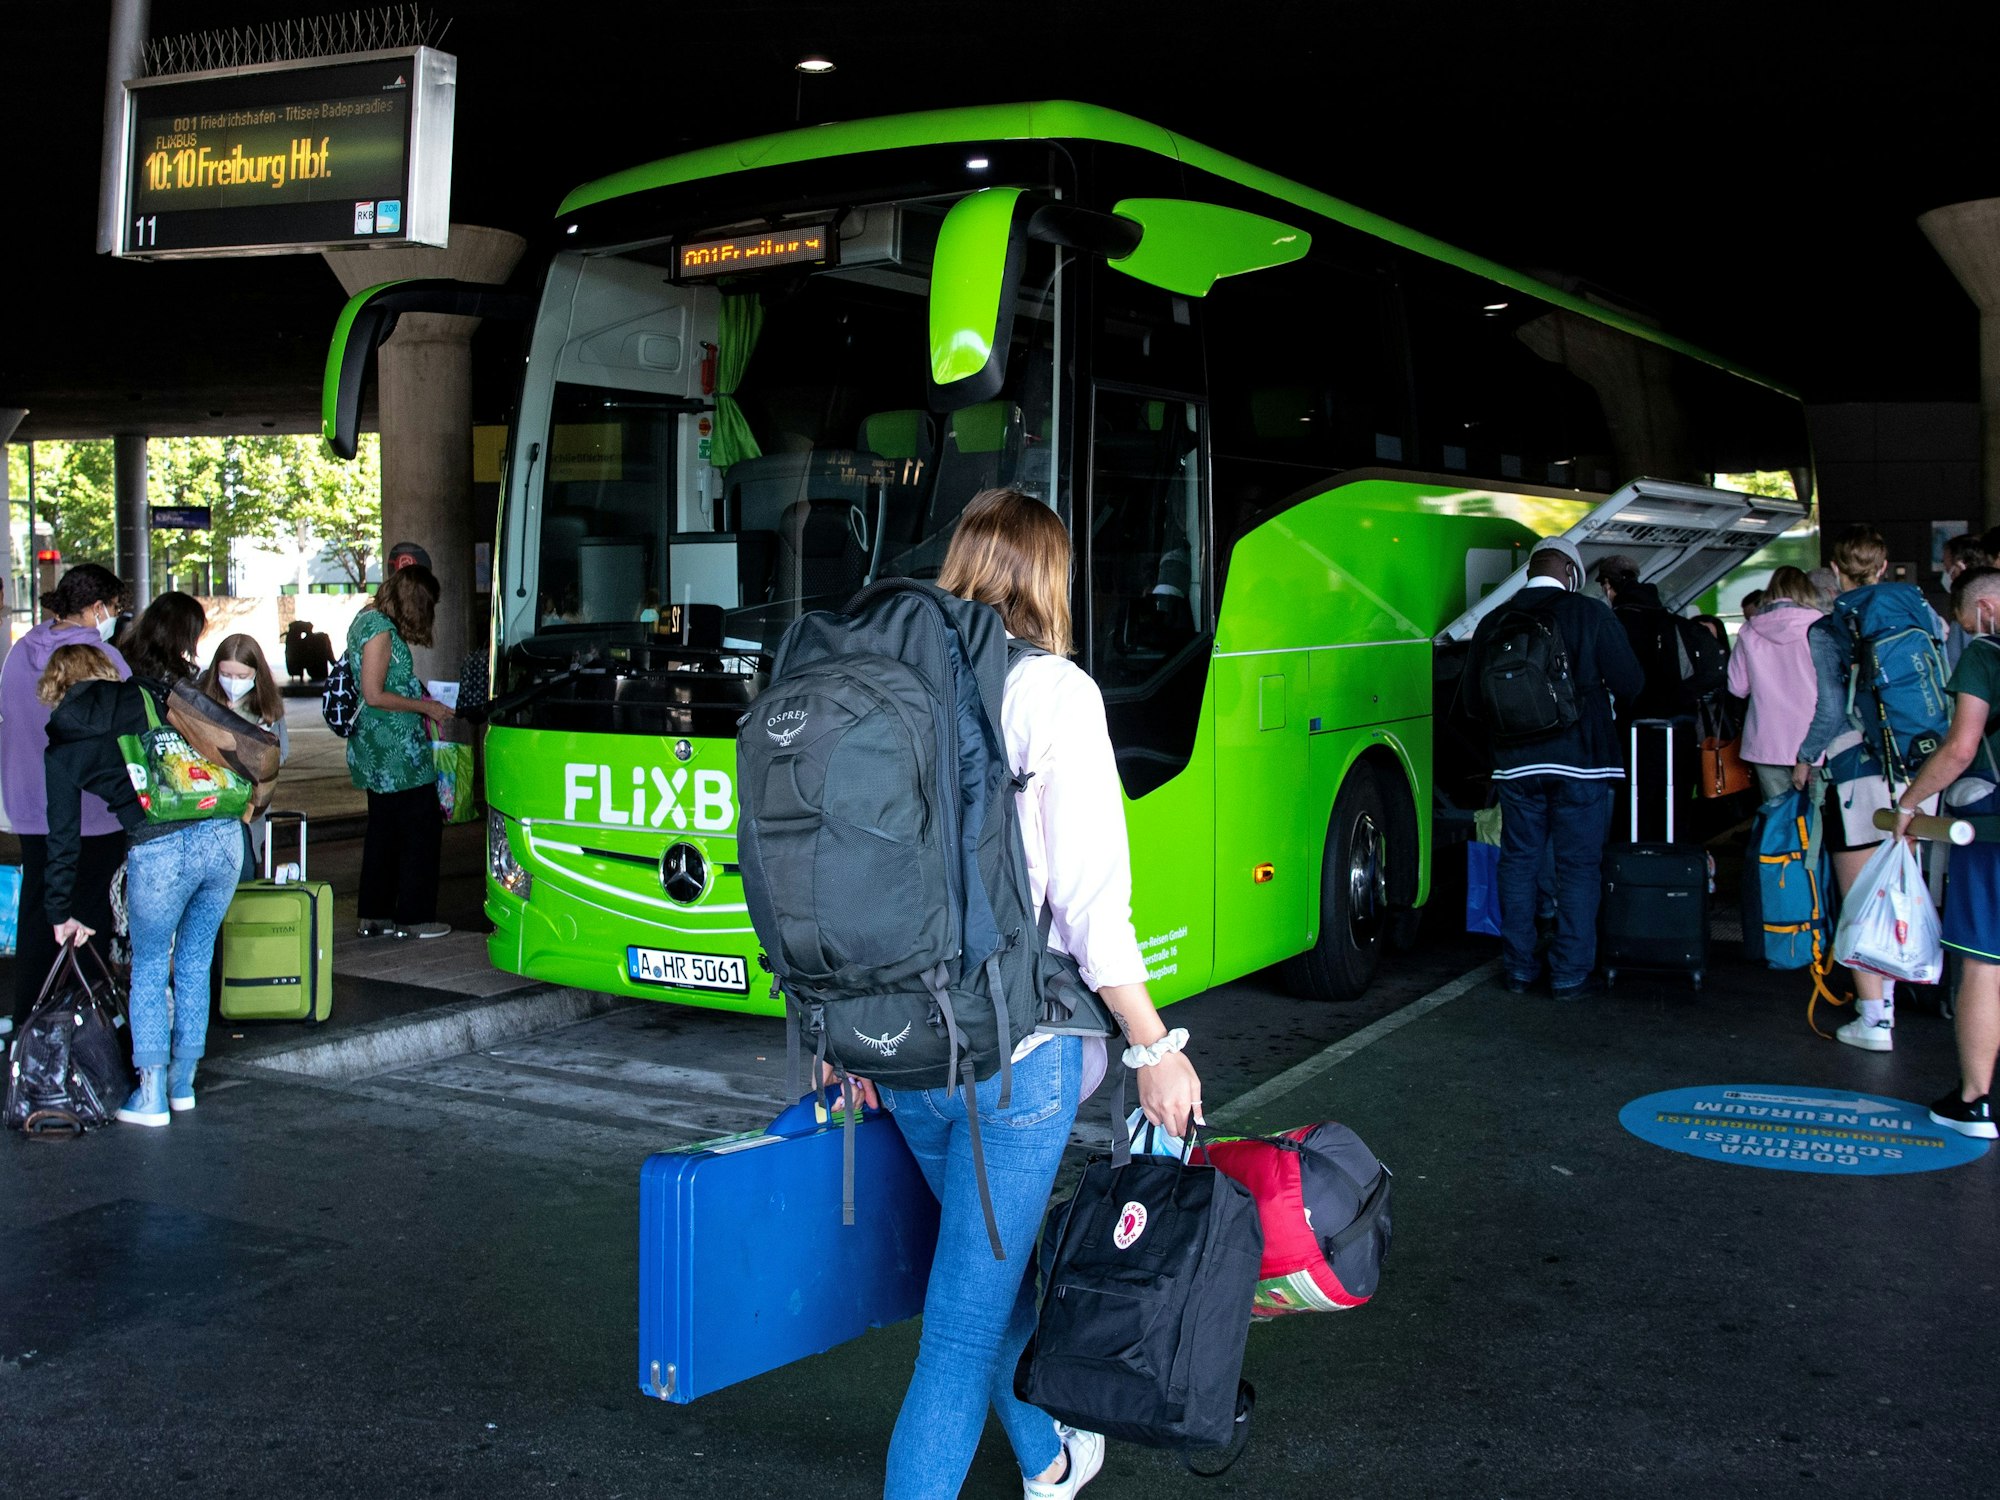 Reisende stehen am Busbahnhof (ZOB) in München an einem Bus. Die Lokführergewerkschaft GDL hat ihre Mitglieder zum Streik bei der Deutschen Bahn aufgerufen. Einige Reisende weichen nun auch auf Busverbindungen aus. +++ dpa-Bildfunk +++